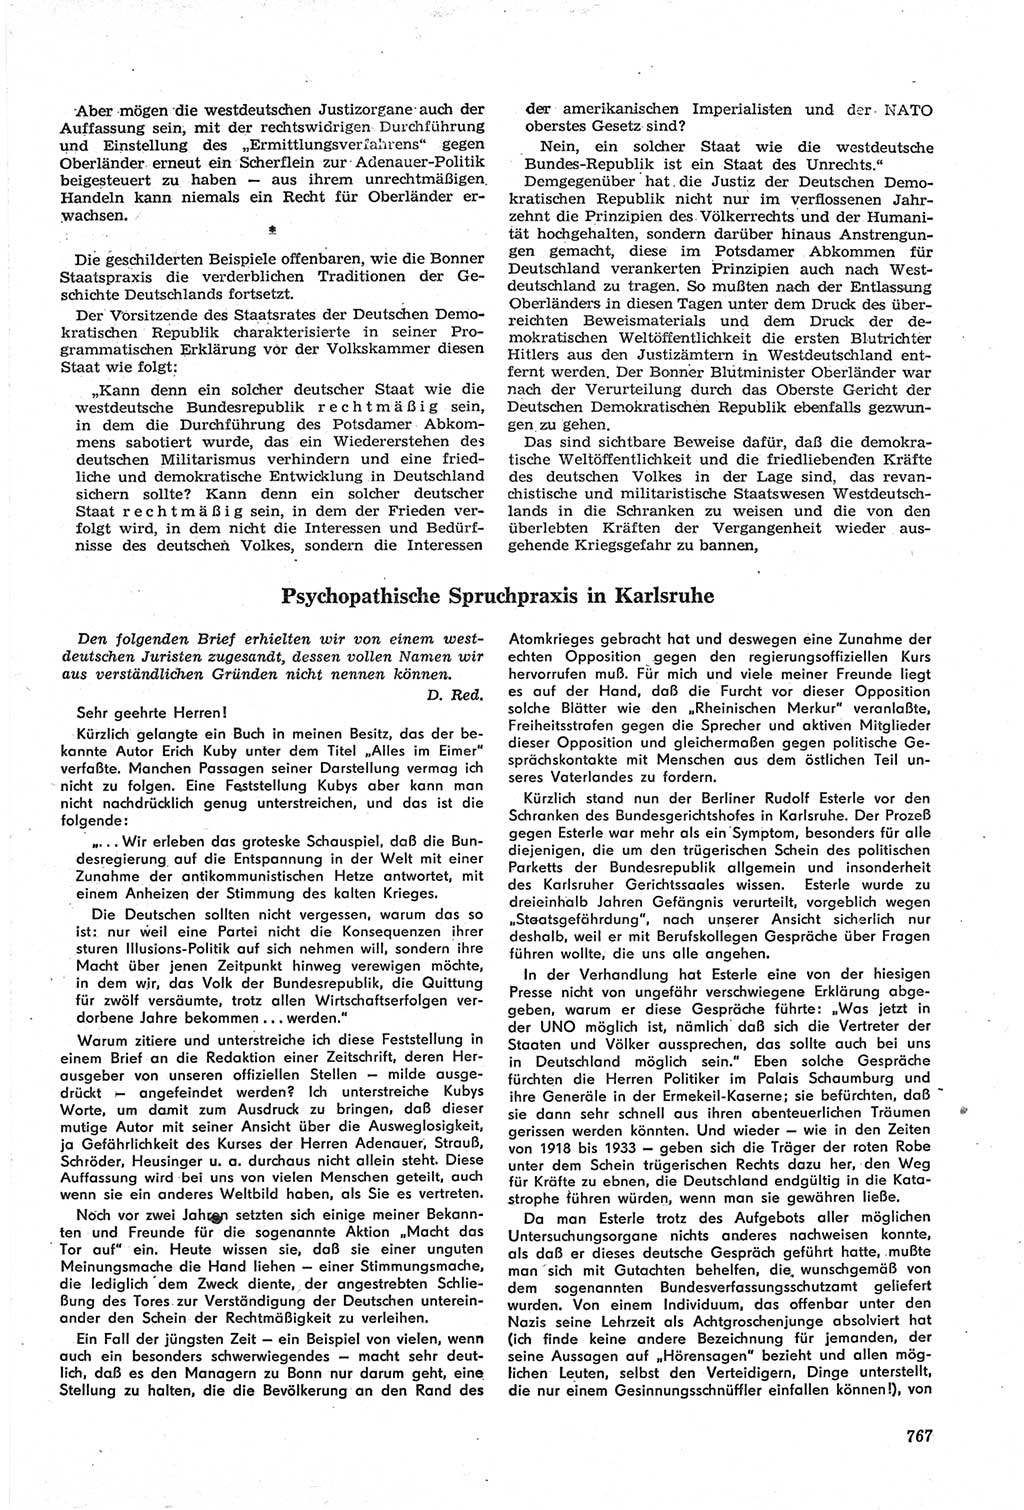 Neue Justiz (NJ), Zeitschrift für Recht und Rechtswissenschaft [Deutsche Demokratische Republik (DDR)], 14. Jahrgang 1960, Seite 767 (NJ DDR 1960, S. 767)